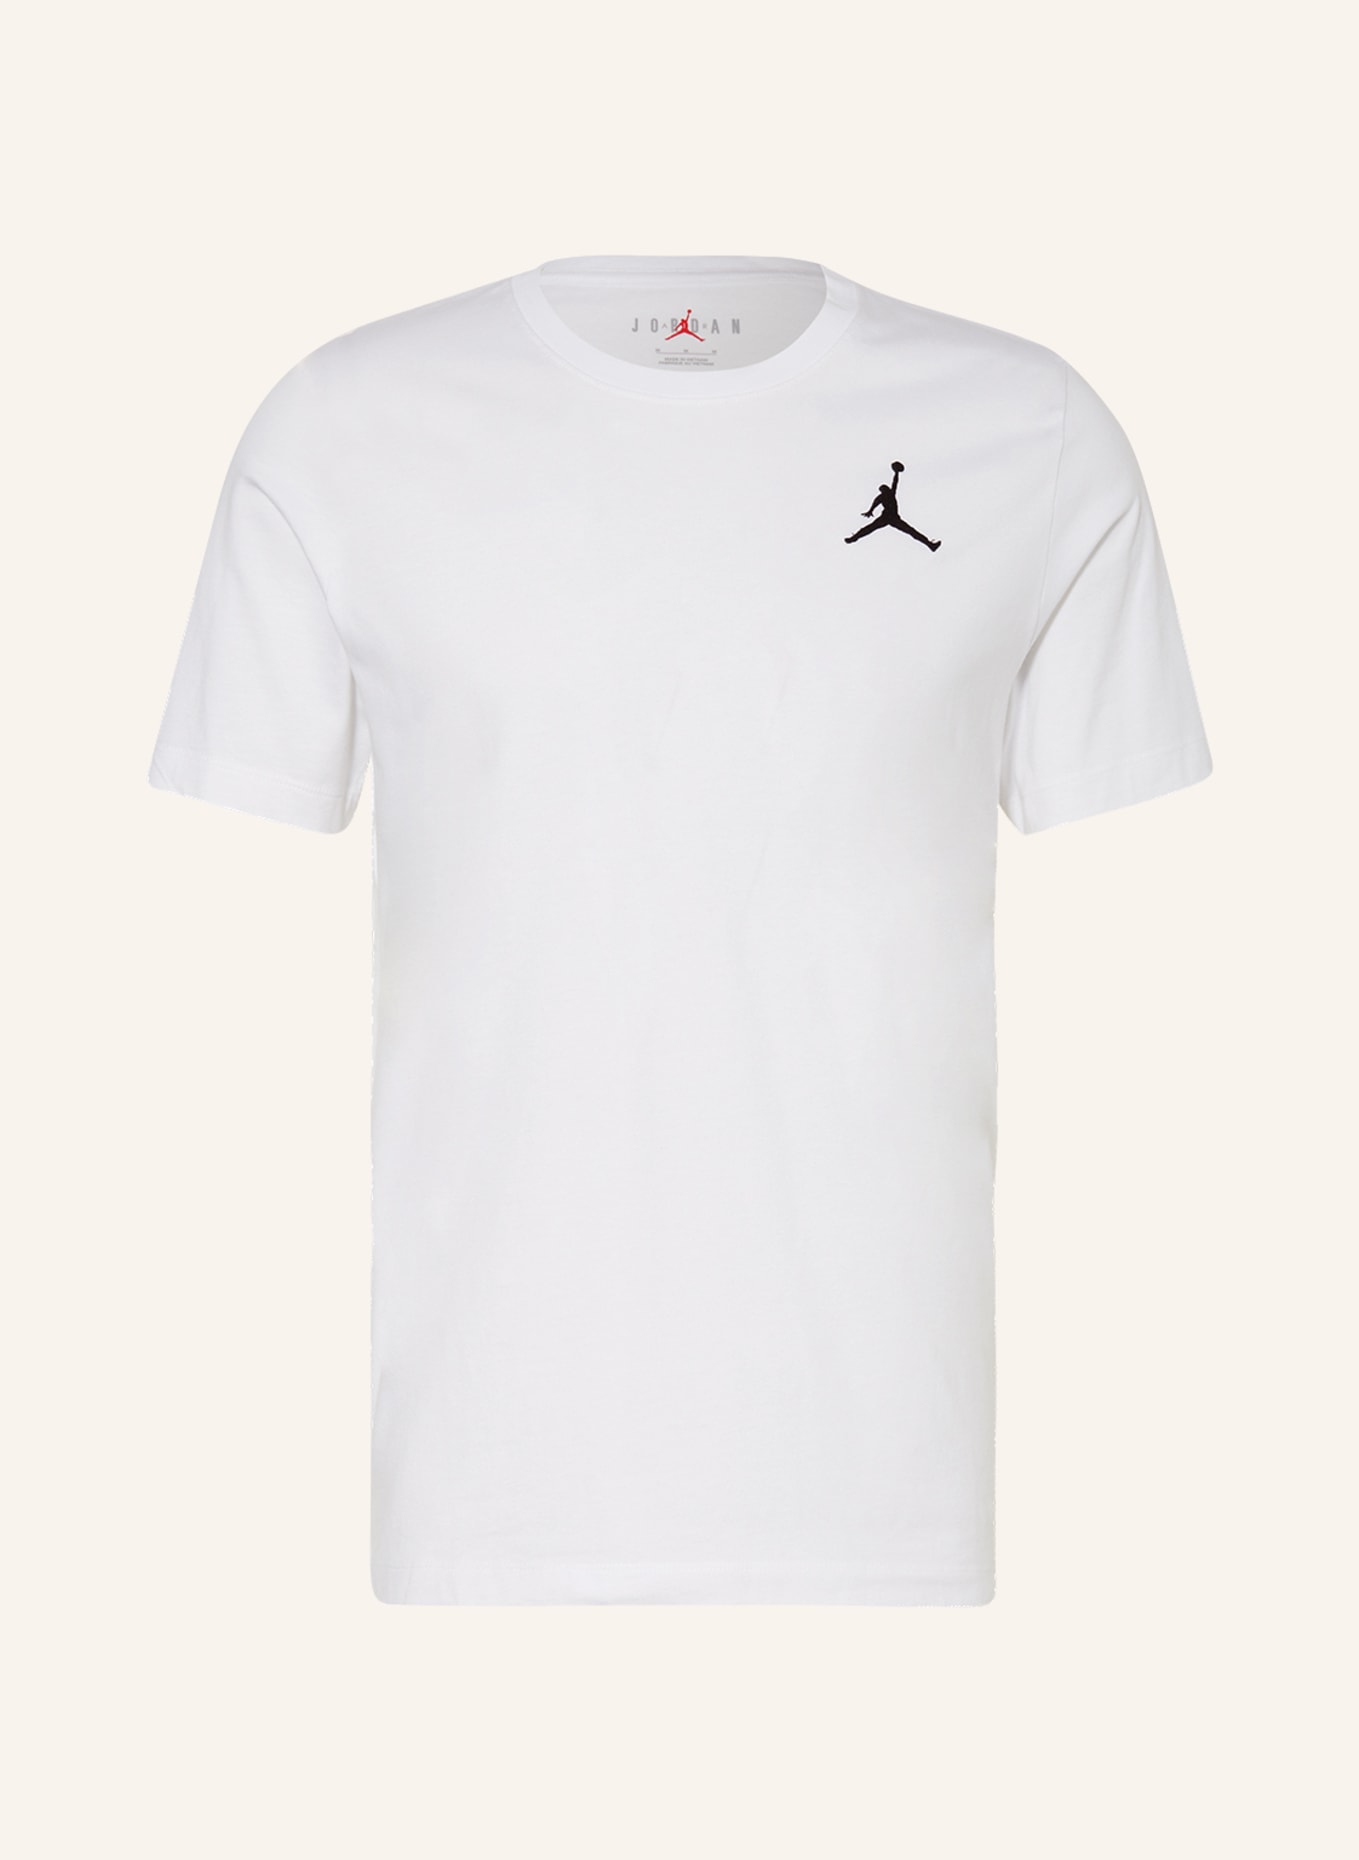 JORDAN T-shirt JORDAN JUMPMAN, Color: WHITE (Image 1)